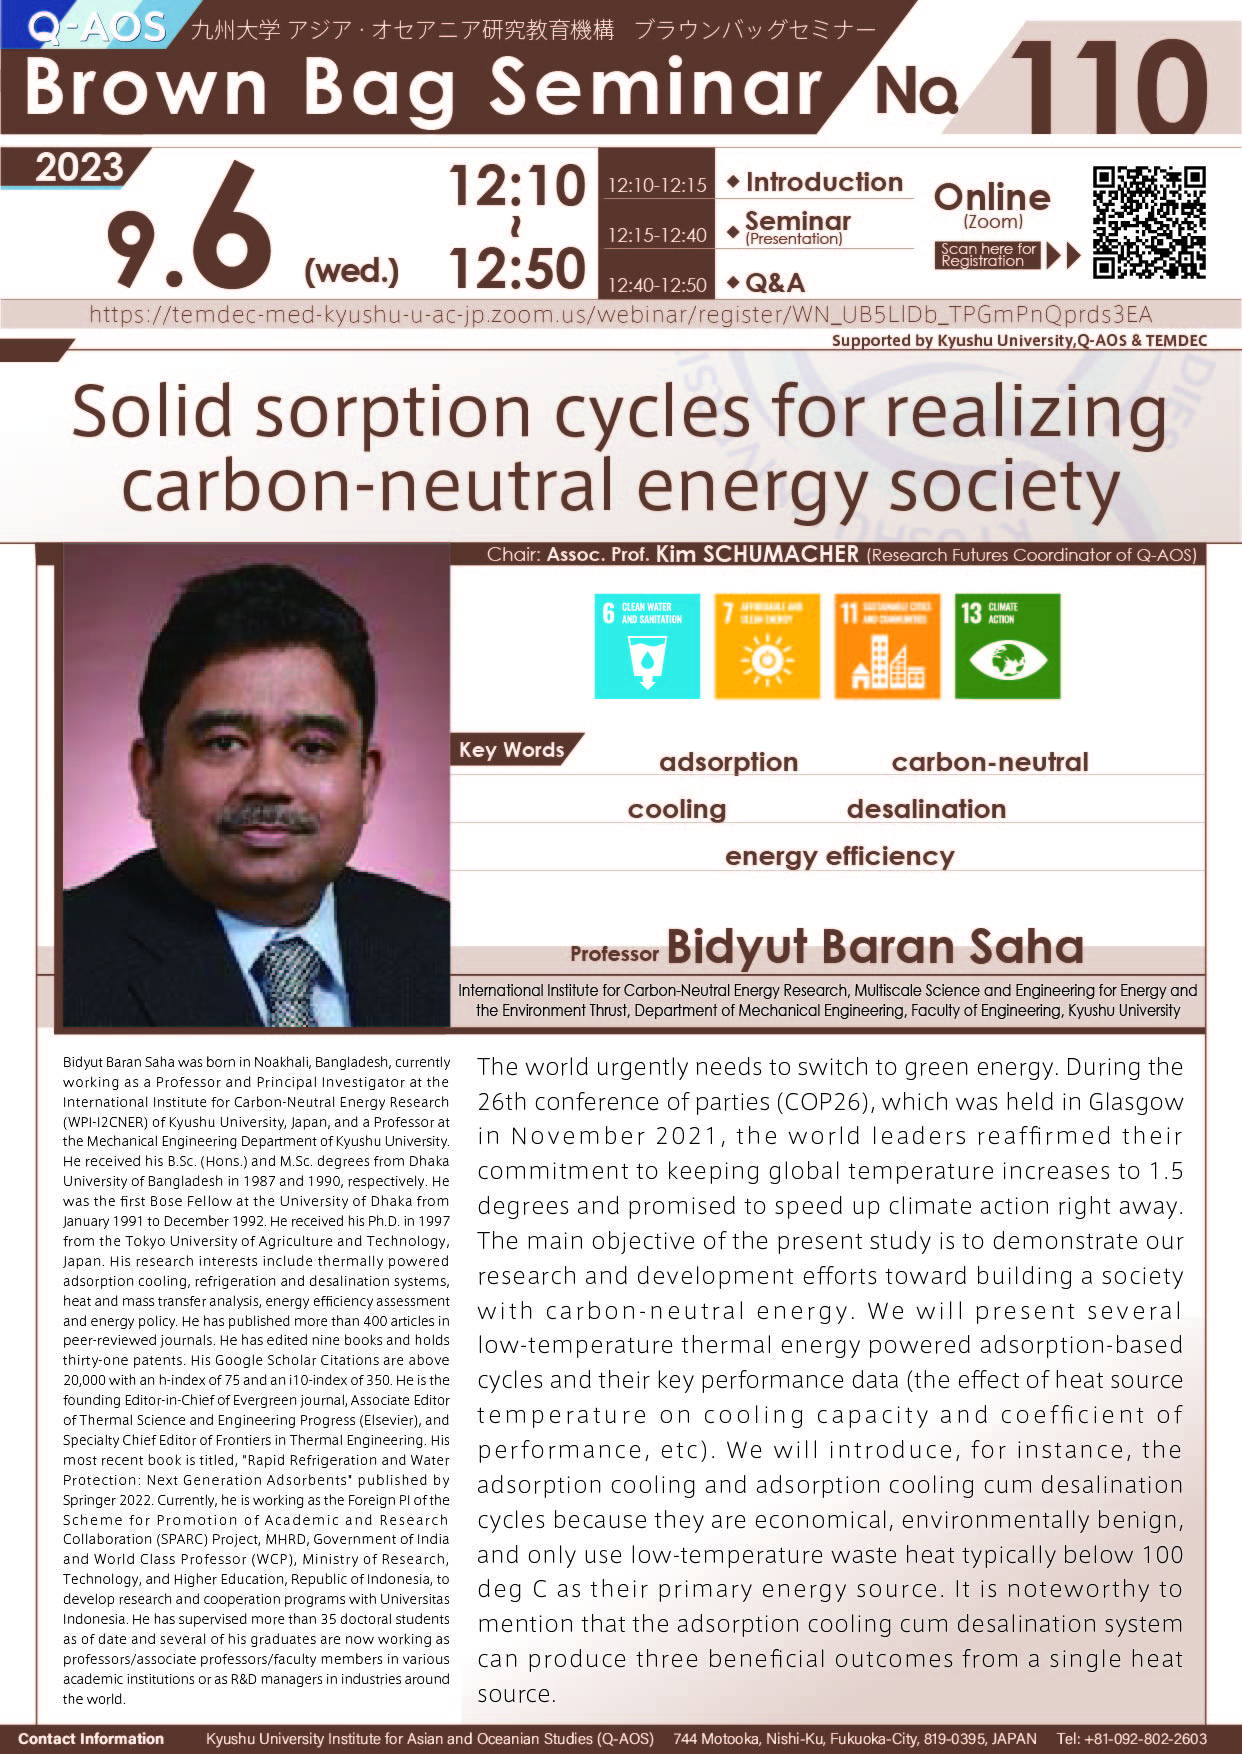 アイキャッチ画像：Q-AOS Brown Bag Seminar Series The 110th Seminar “Solid sorption cycles for realizing carbon-neutral energy society”